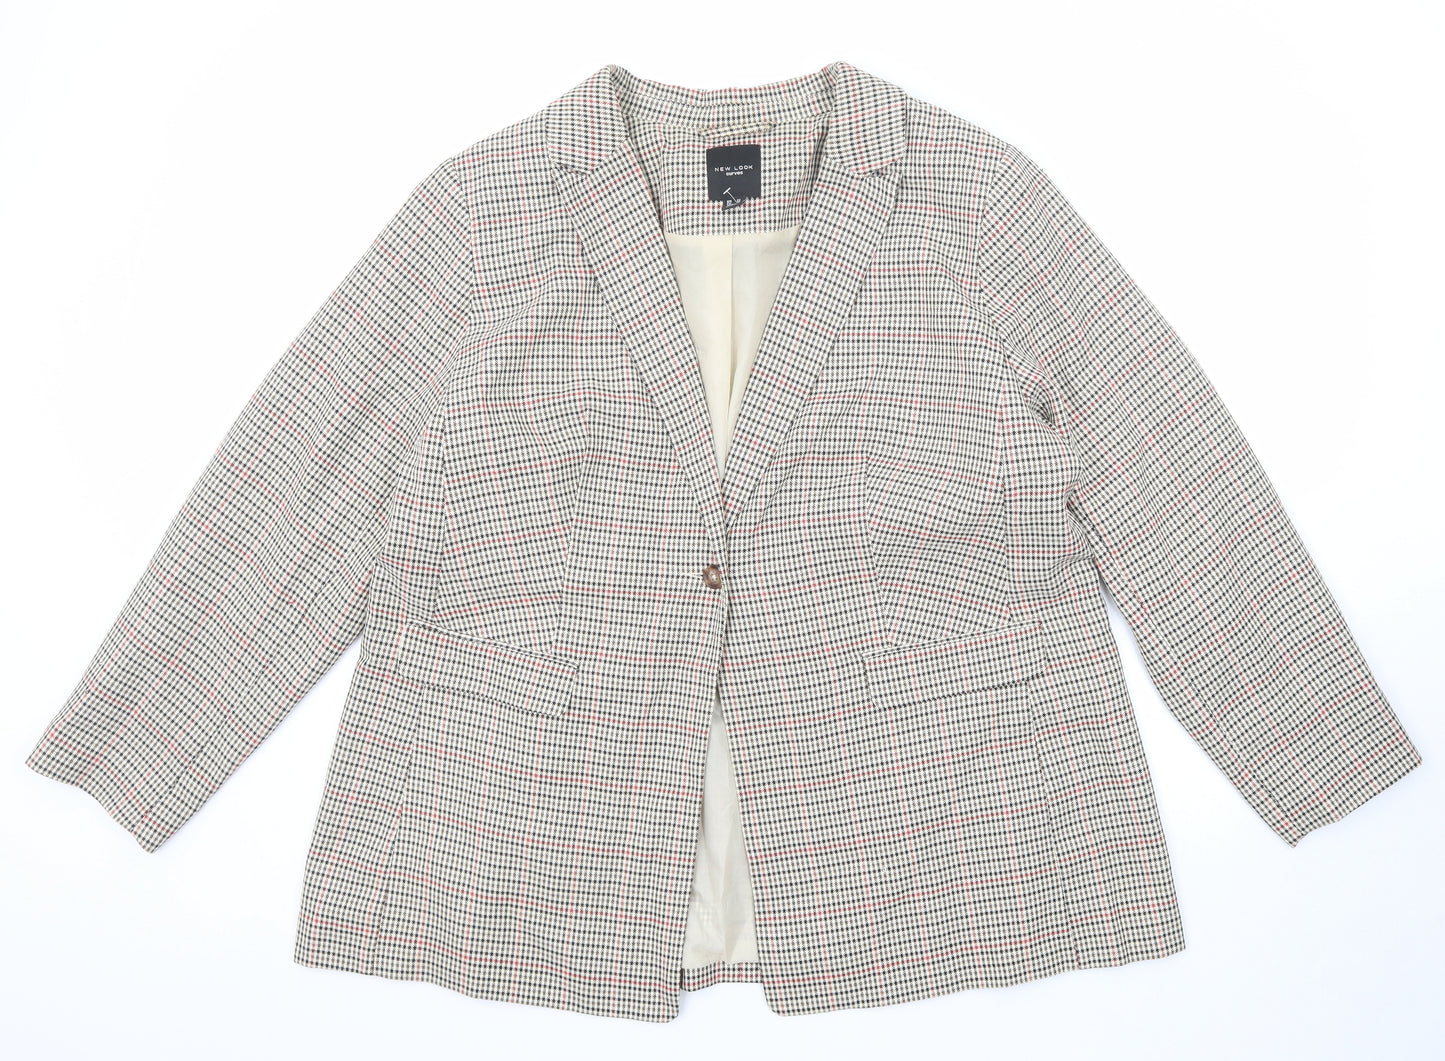 New Look Womens Beige Geometric Polyester Jacket Blazer Size 22